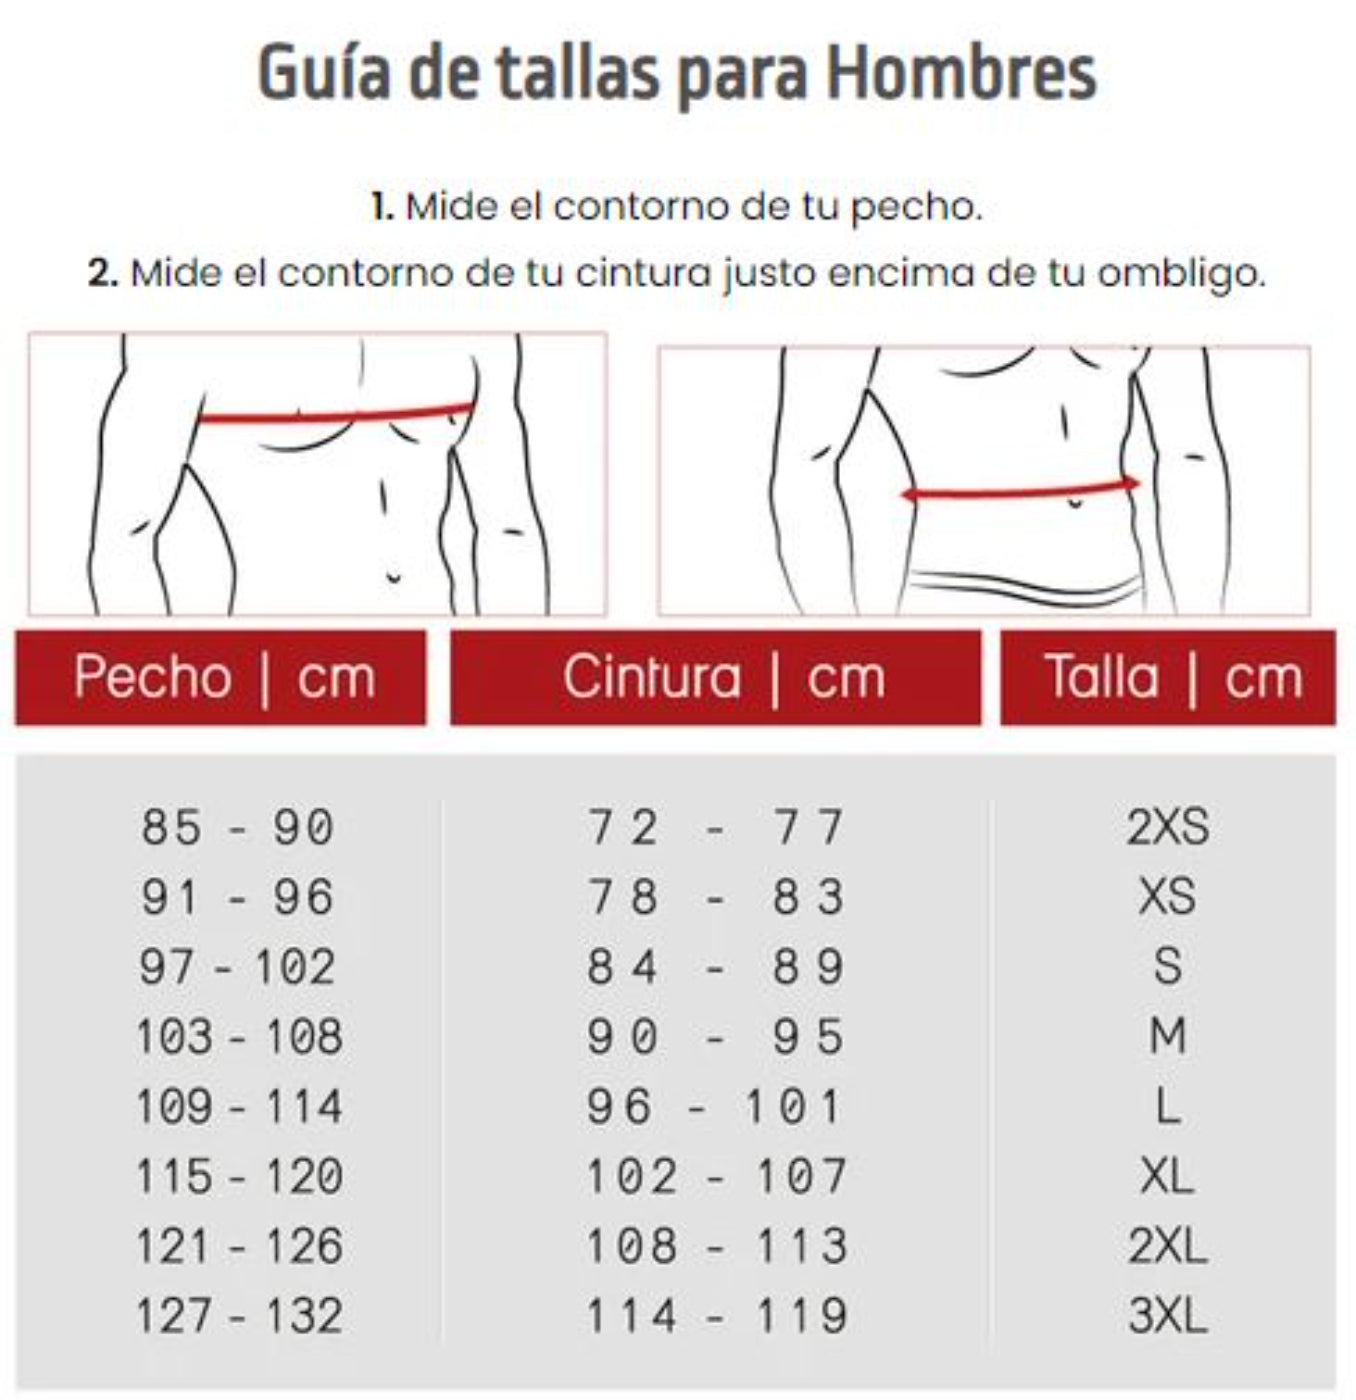 Faja Colombiana Postquirúrgica y Modeladora Mediana Compresión Hombre 8135